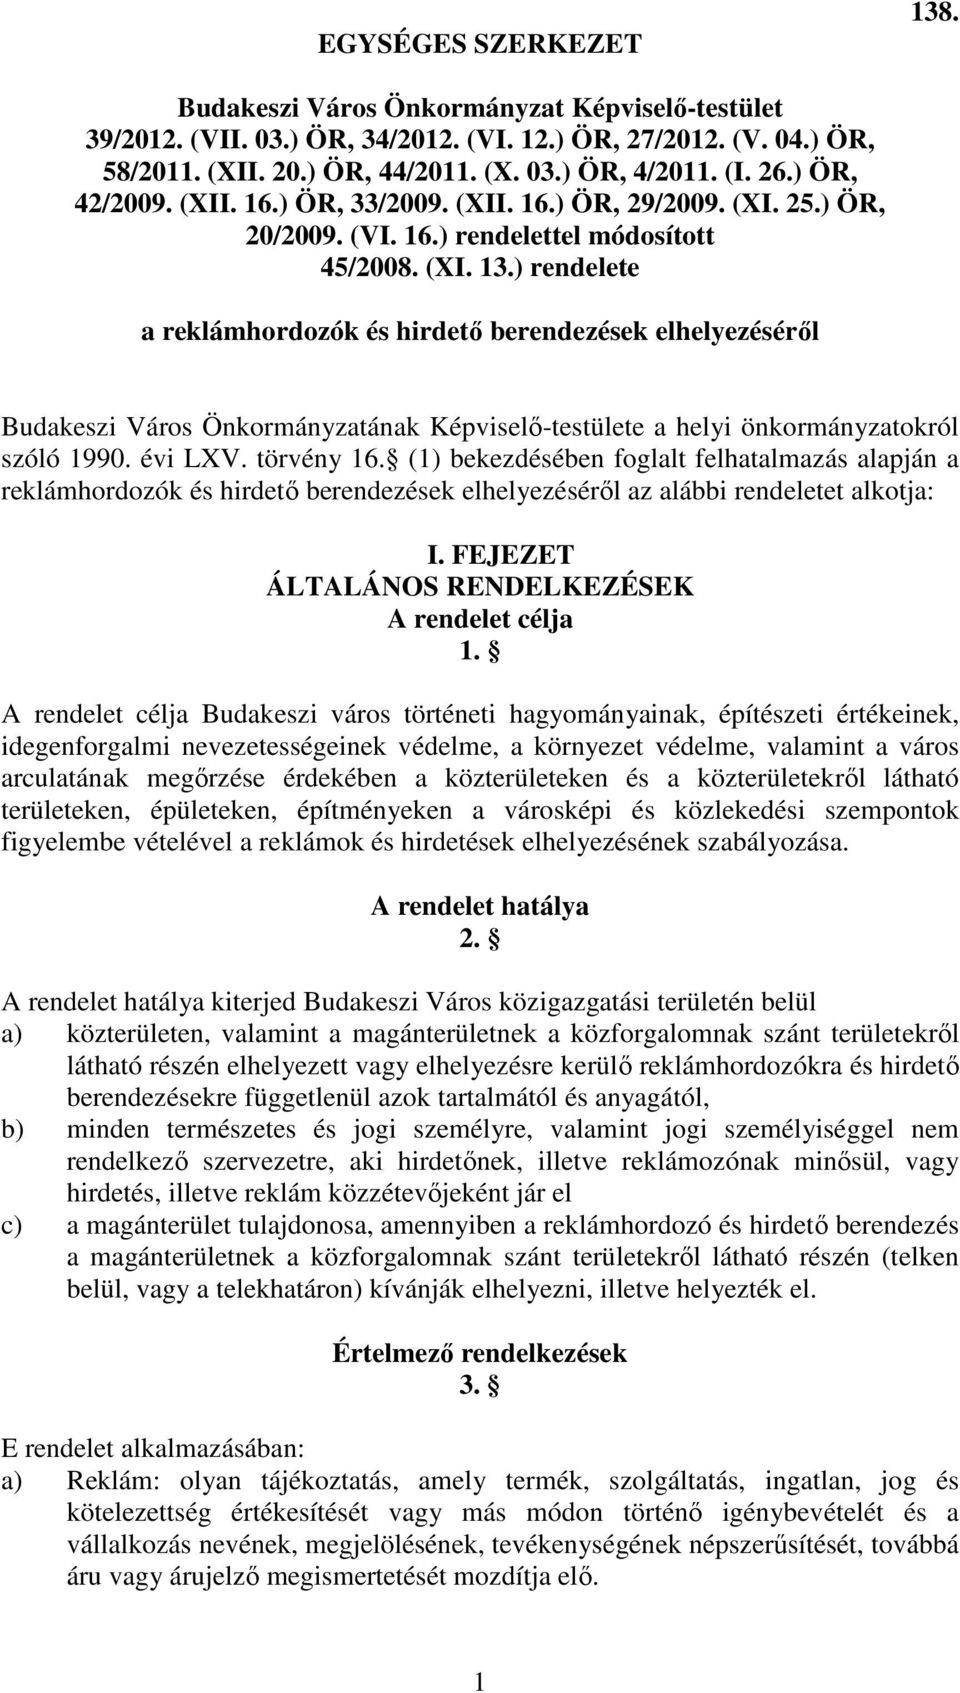 ) rendelete a reklámhordozók és hirdetı berendezések elhelyezésérıl Budakeszi Város Önkormányzatának Képviselı-testülete a helyi önkormányzatokról szóló 1990. évi LXV. törvény 16.